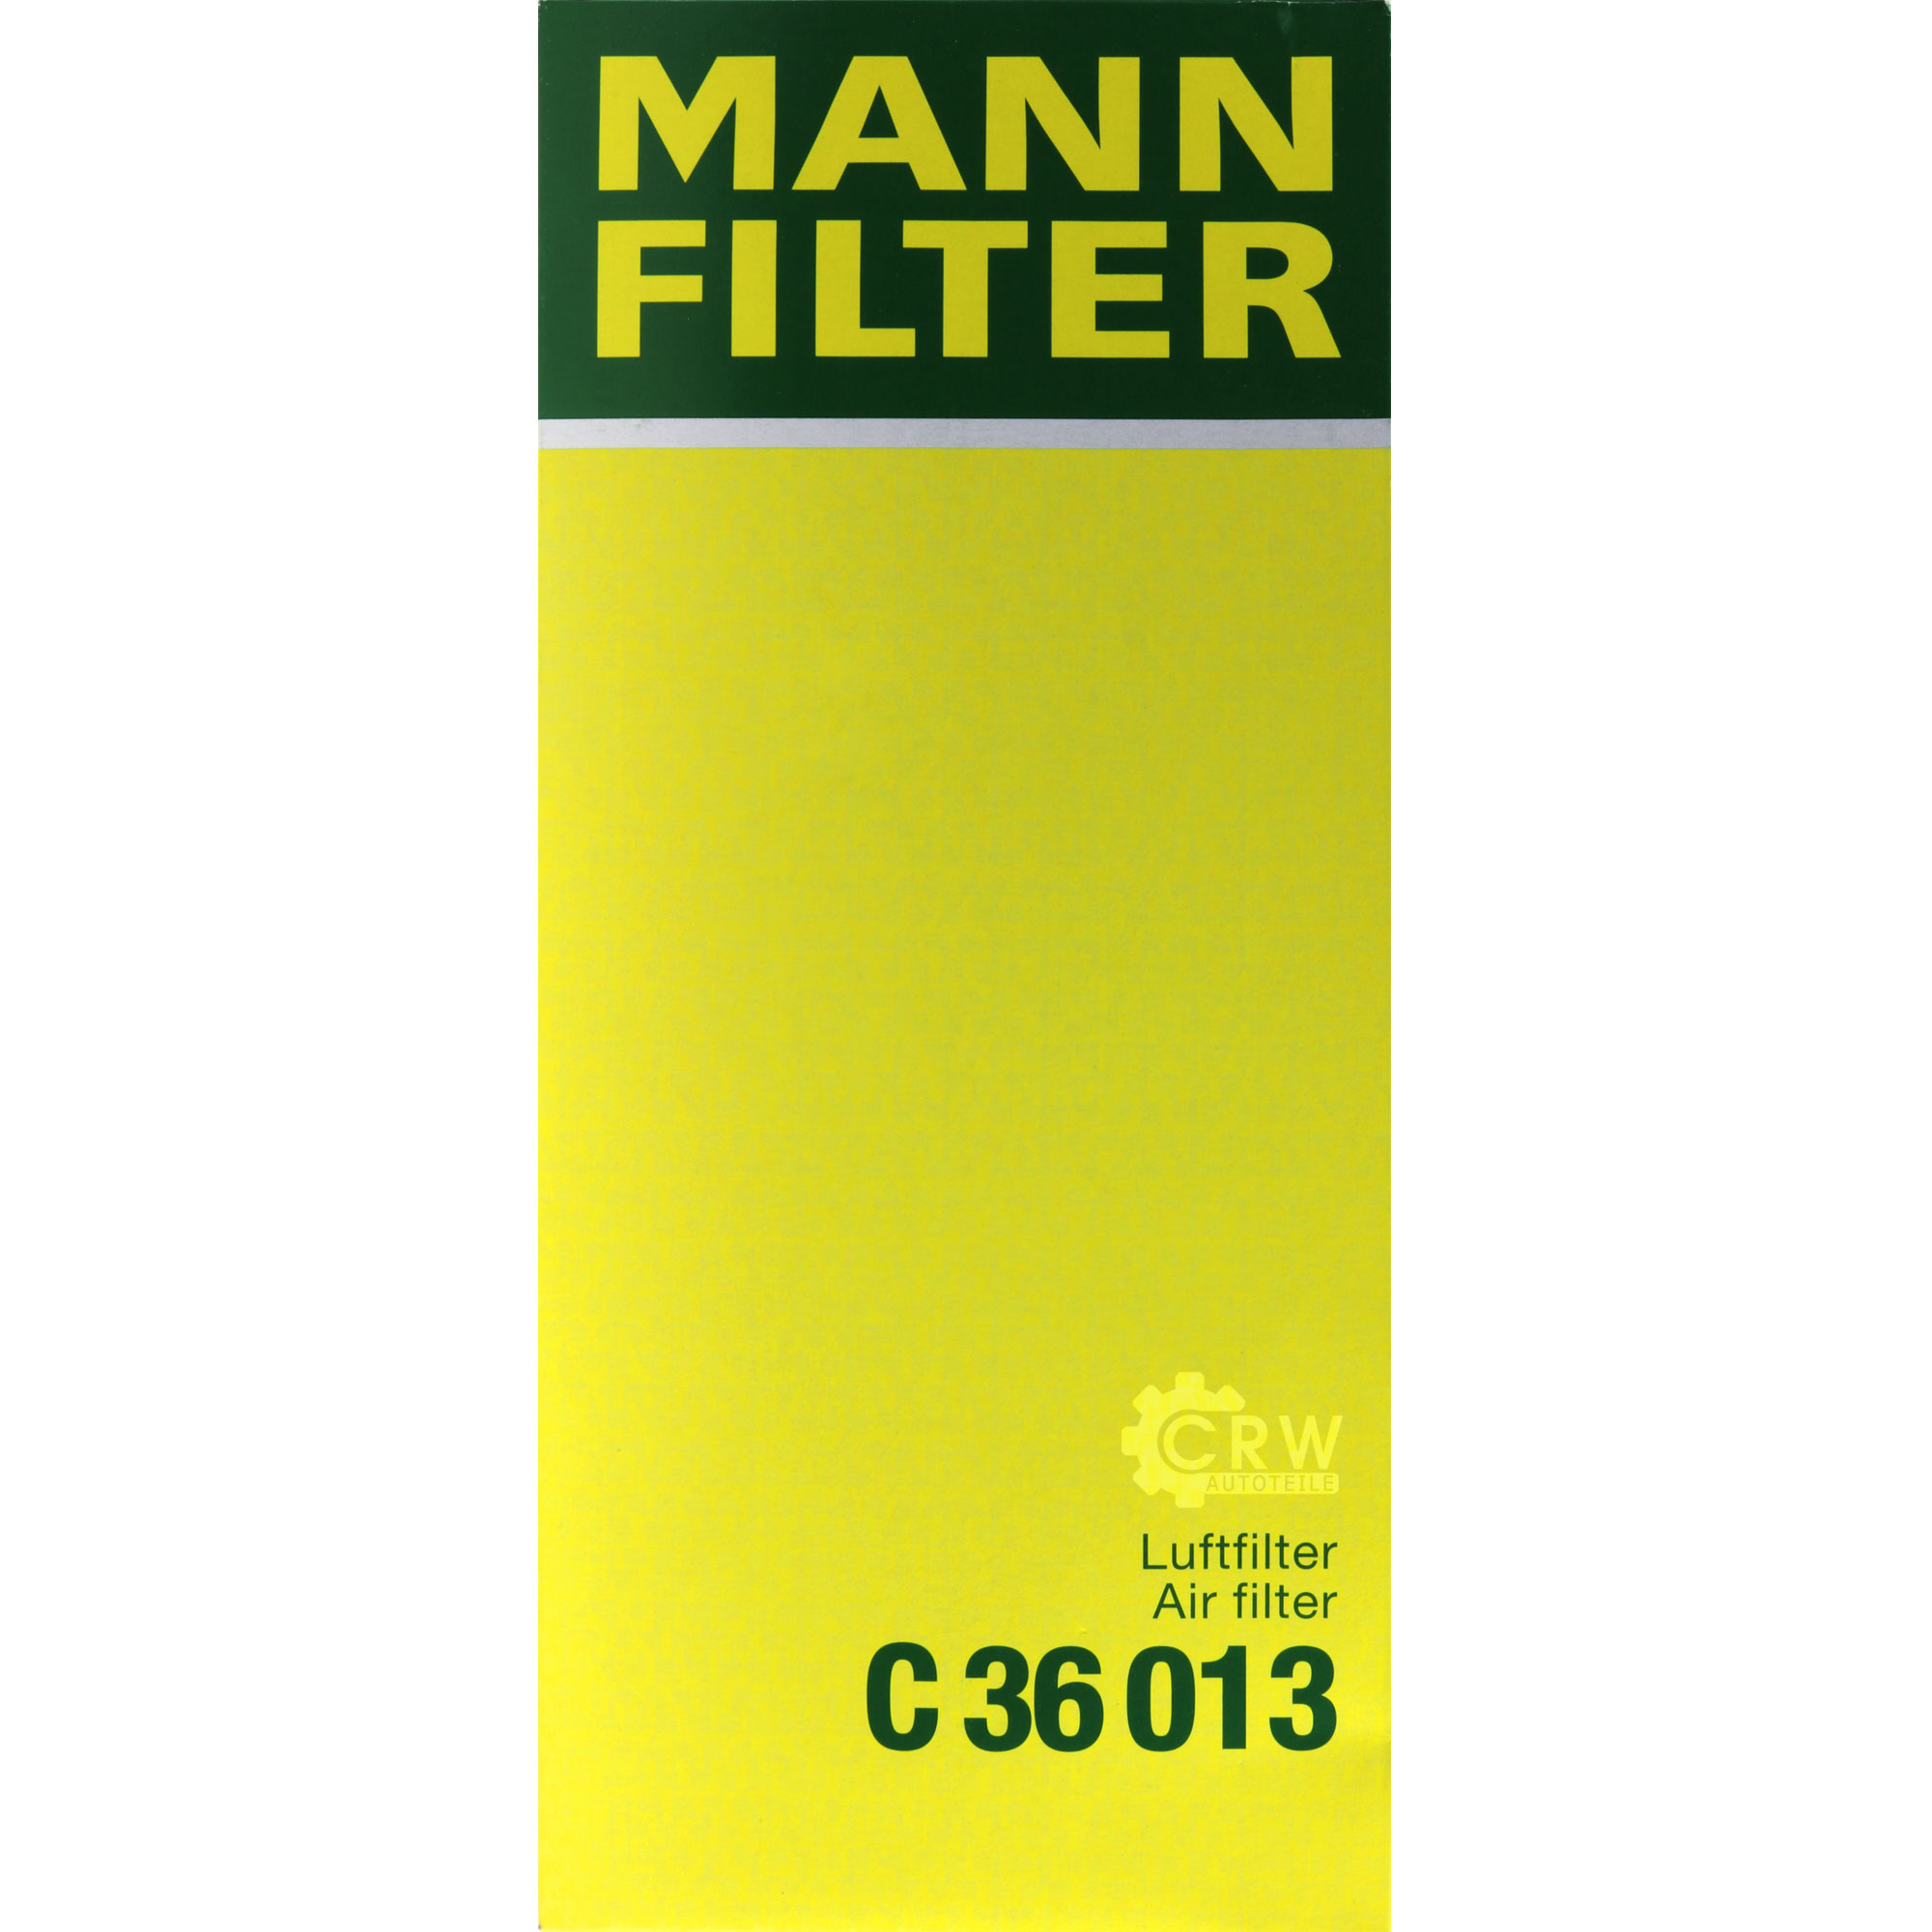 MANN-FILTER Luftfilter für Chevrolet Spark M300 1.0 1.2